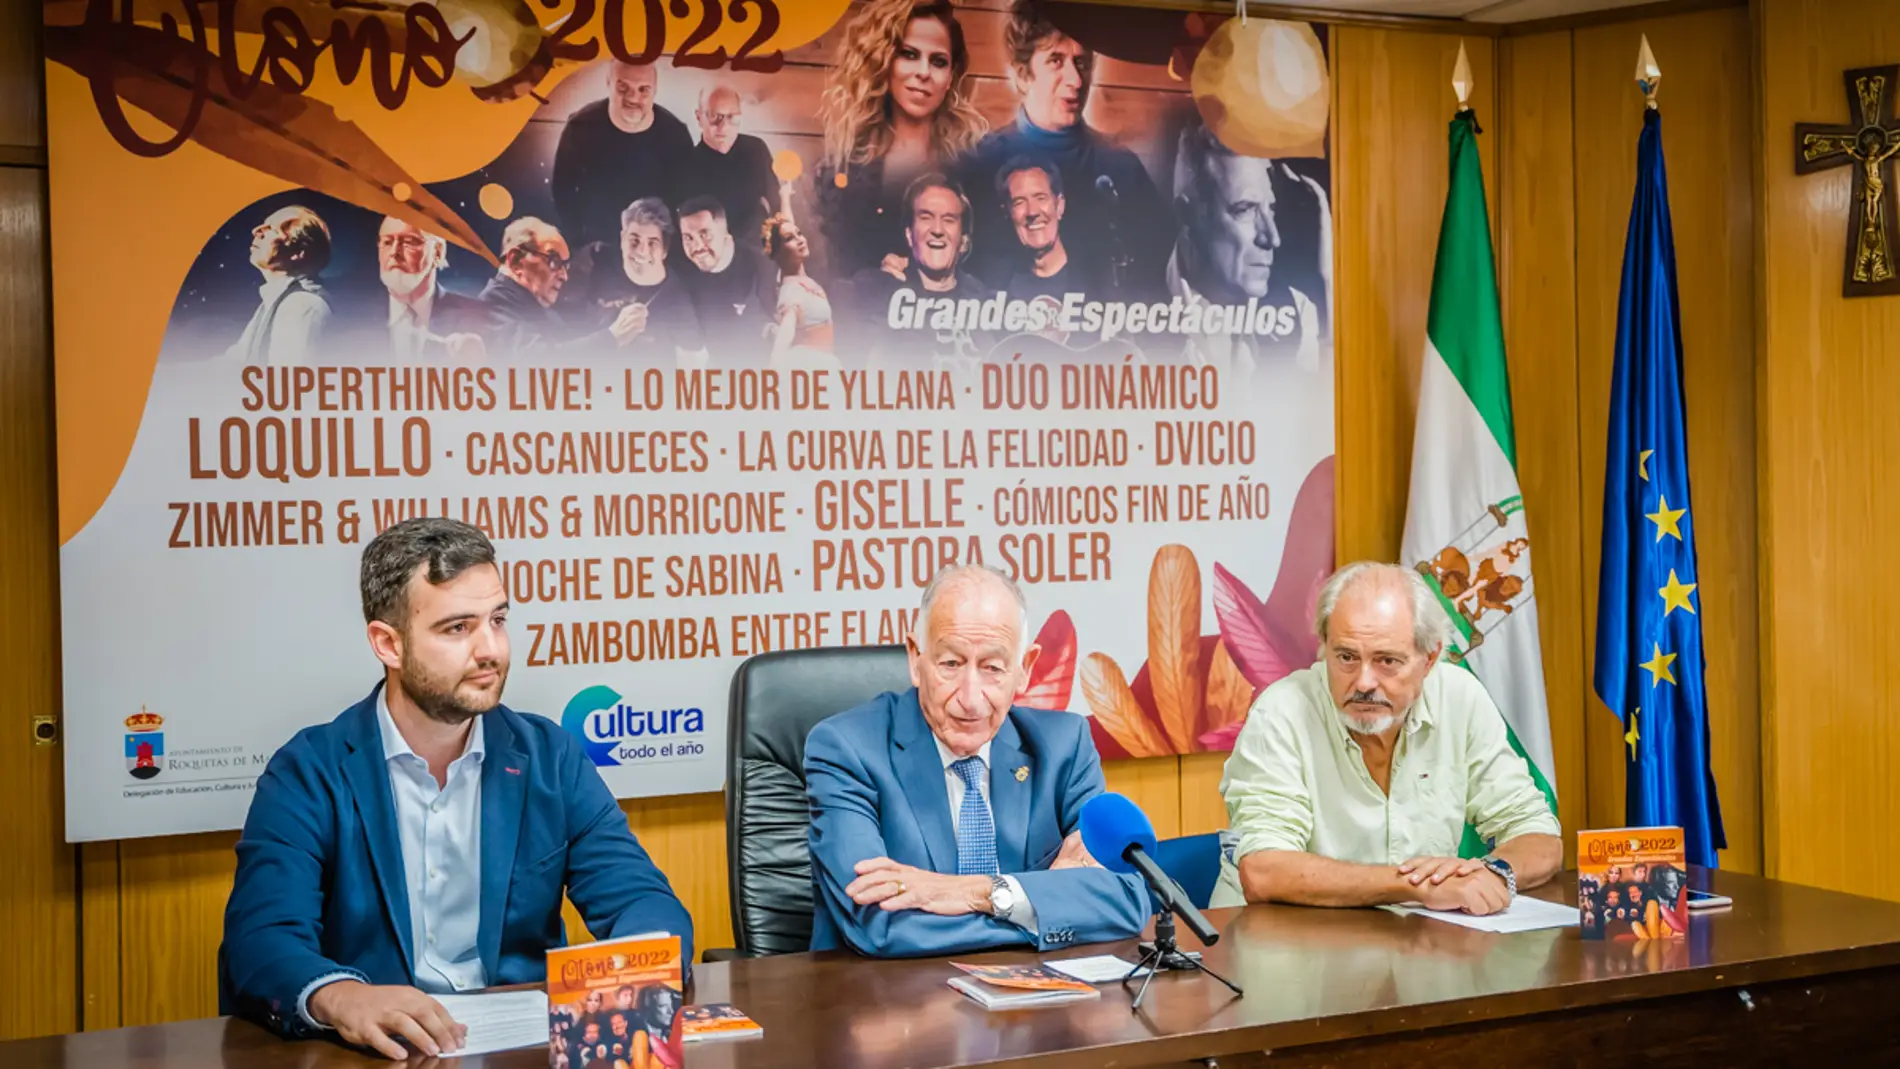 DVicio, Pastora Soler y Dúo Dinámico, entre las propuestas para este otoño en Roquetas de Mar